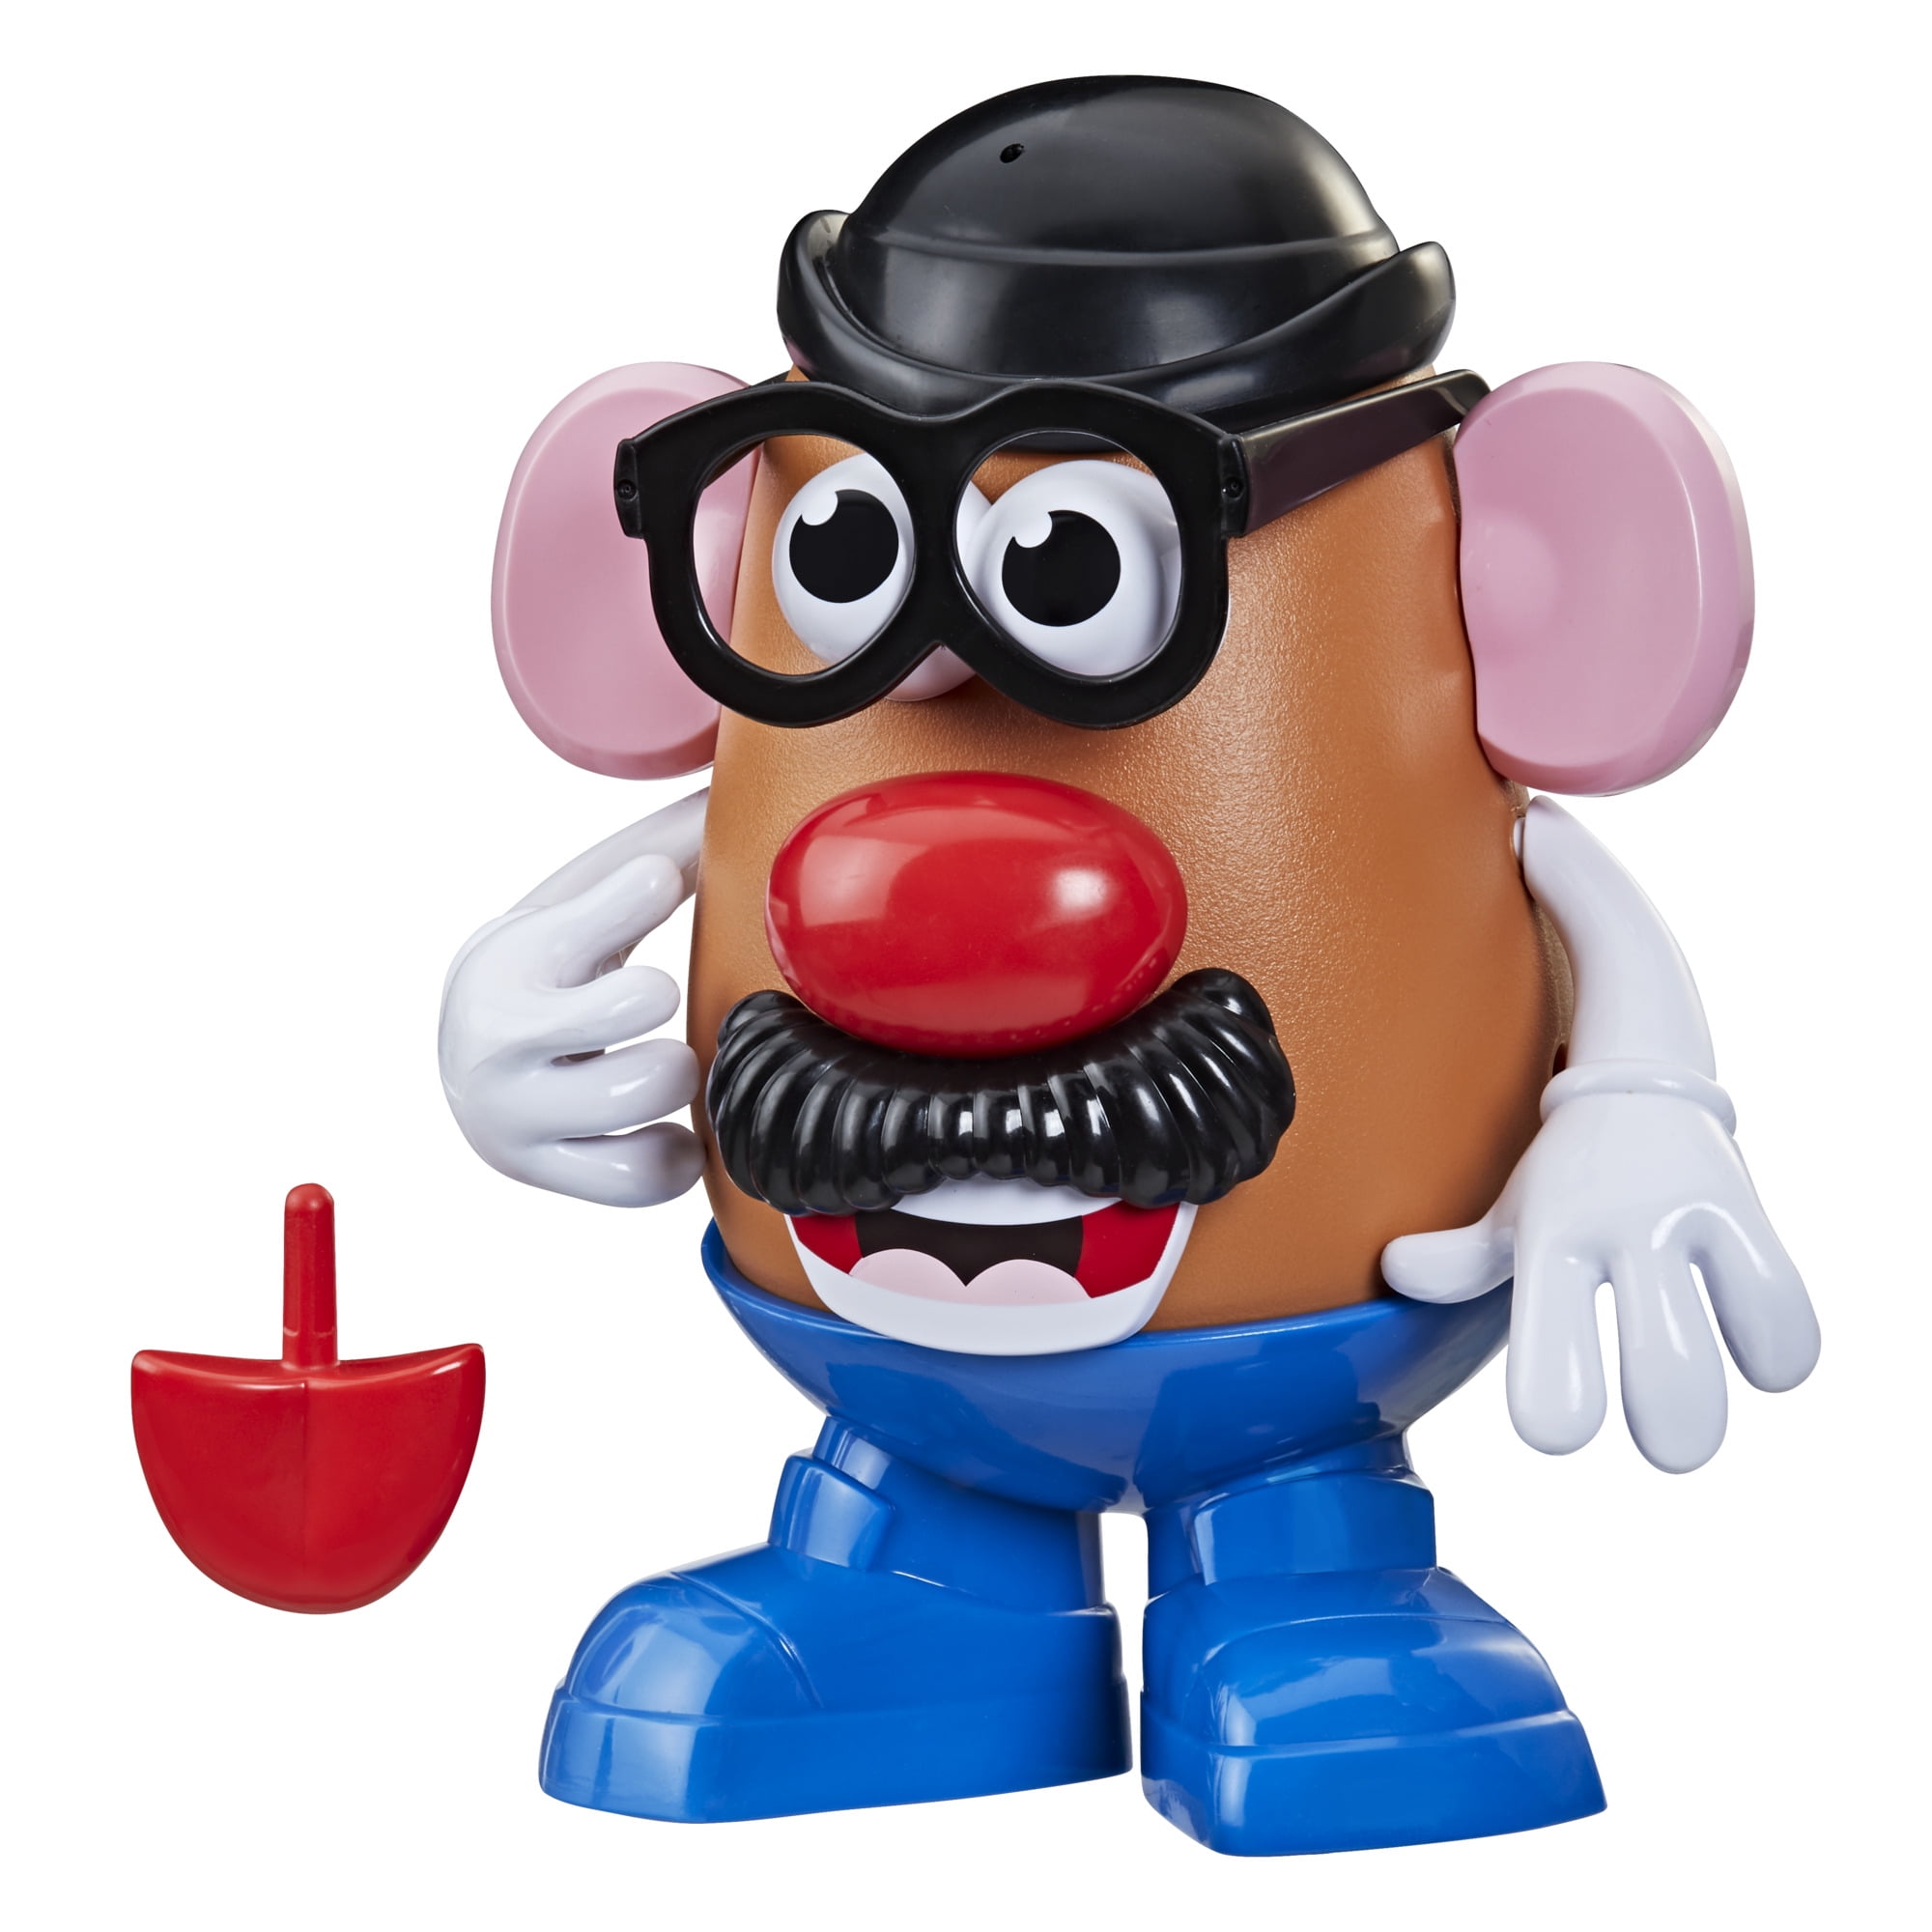 Mr Potato Head Figure for sale online Playskool Friends 